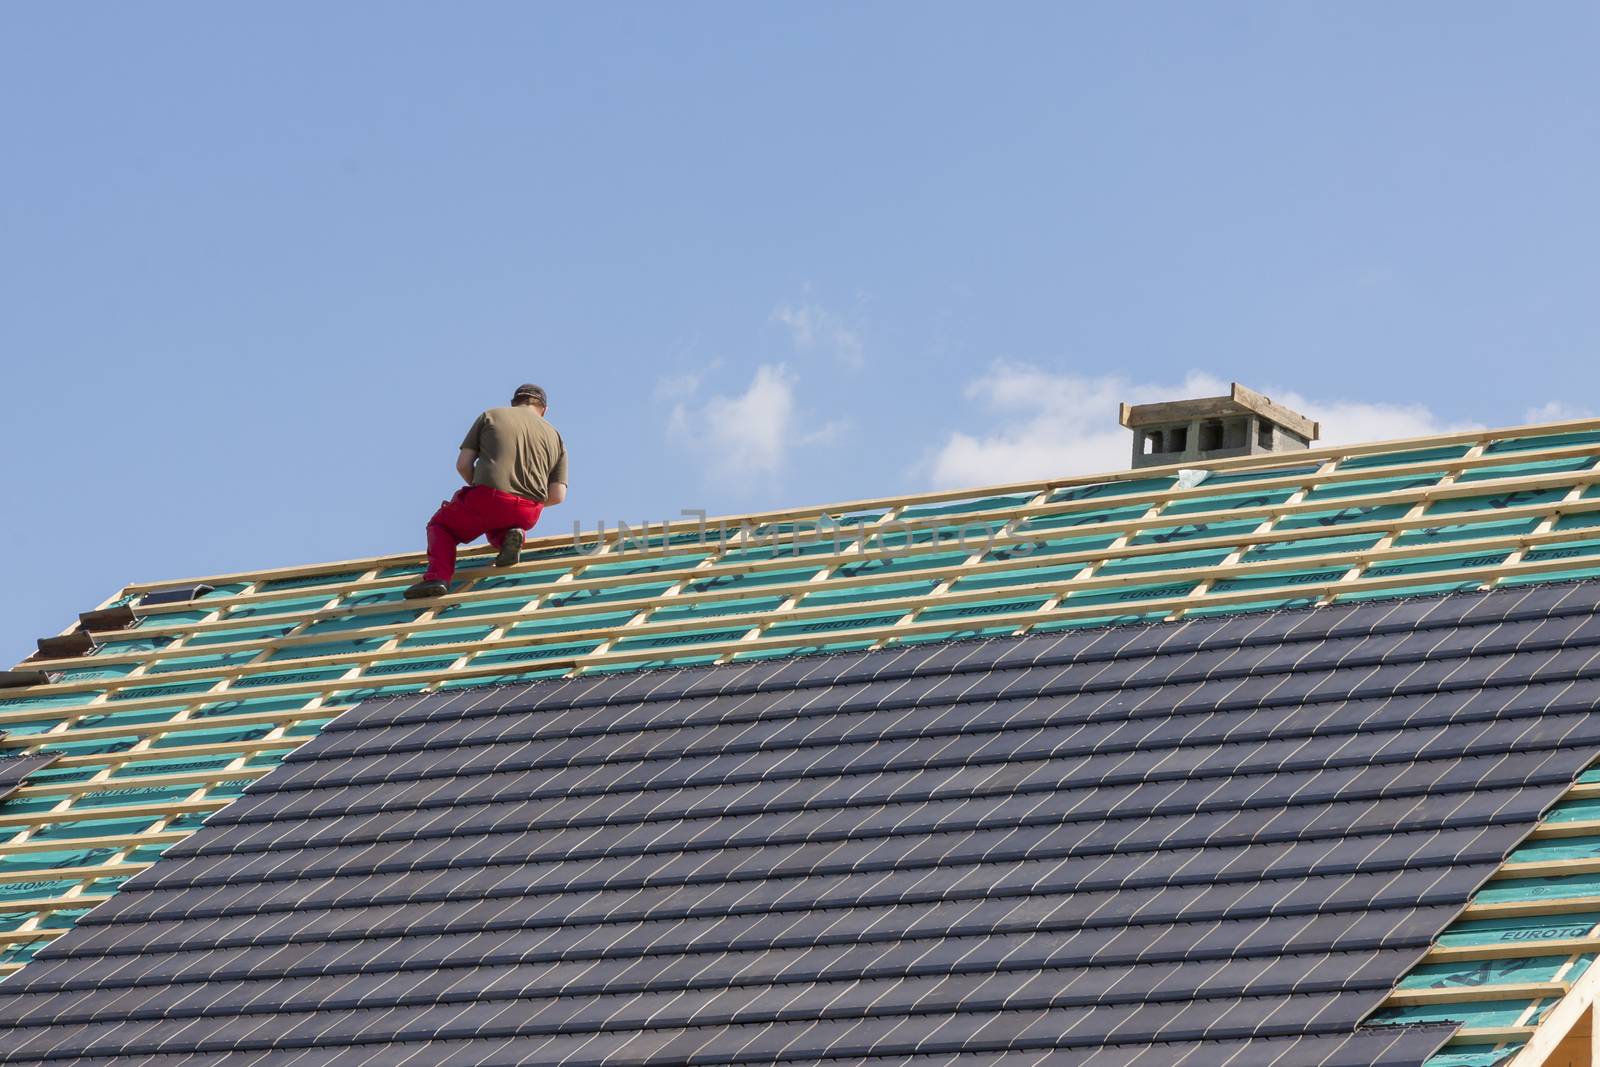 Roofer in work by parys